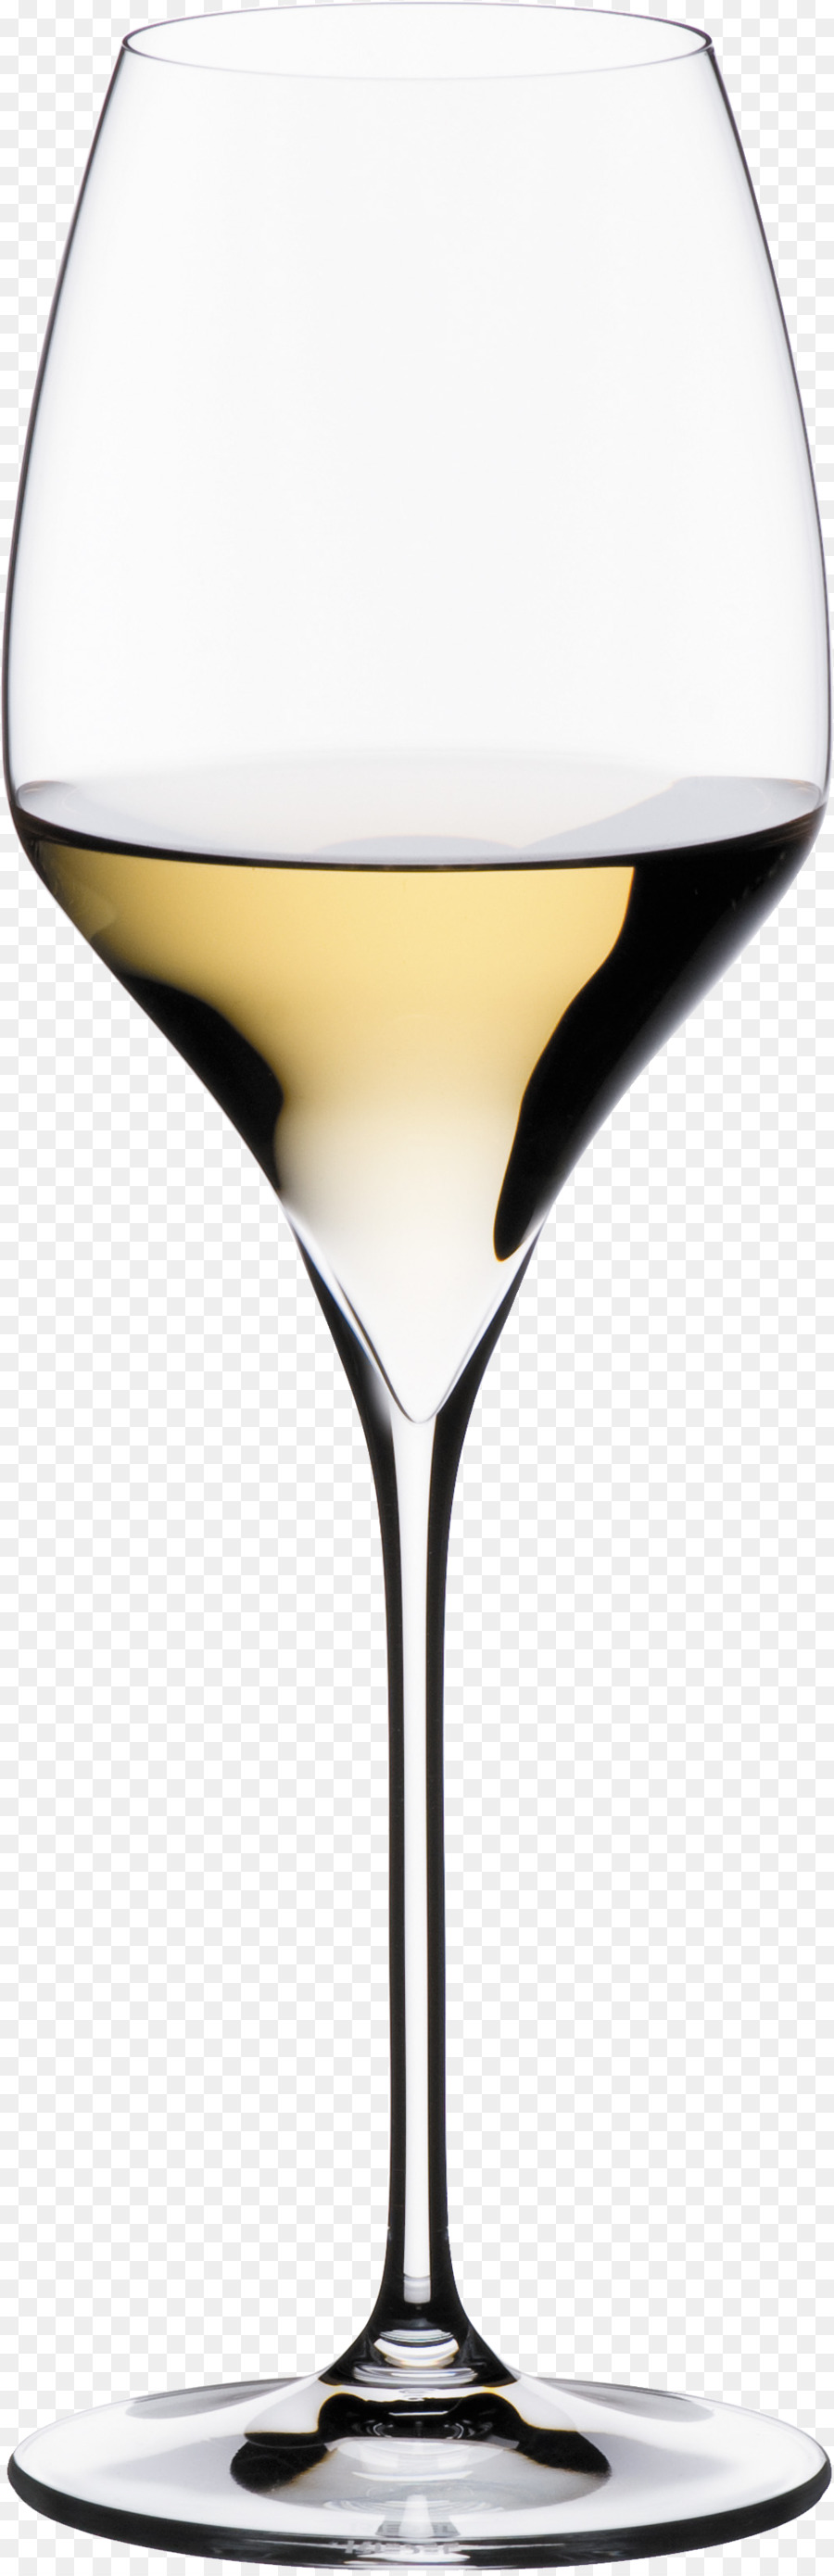 Riesling vino Bianco Sauvignon blanc, Chardonnay - vino